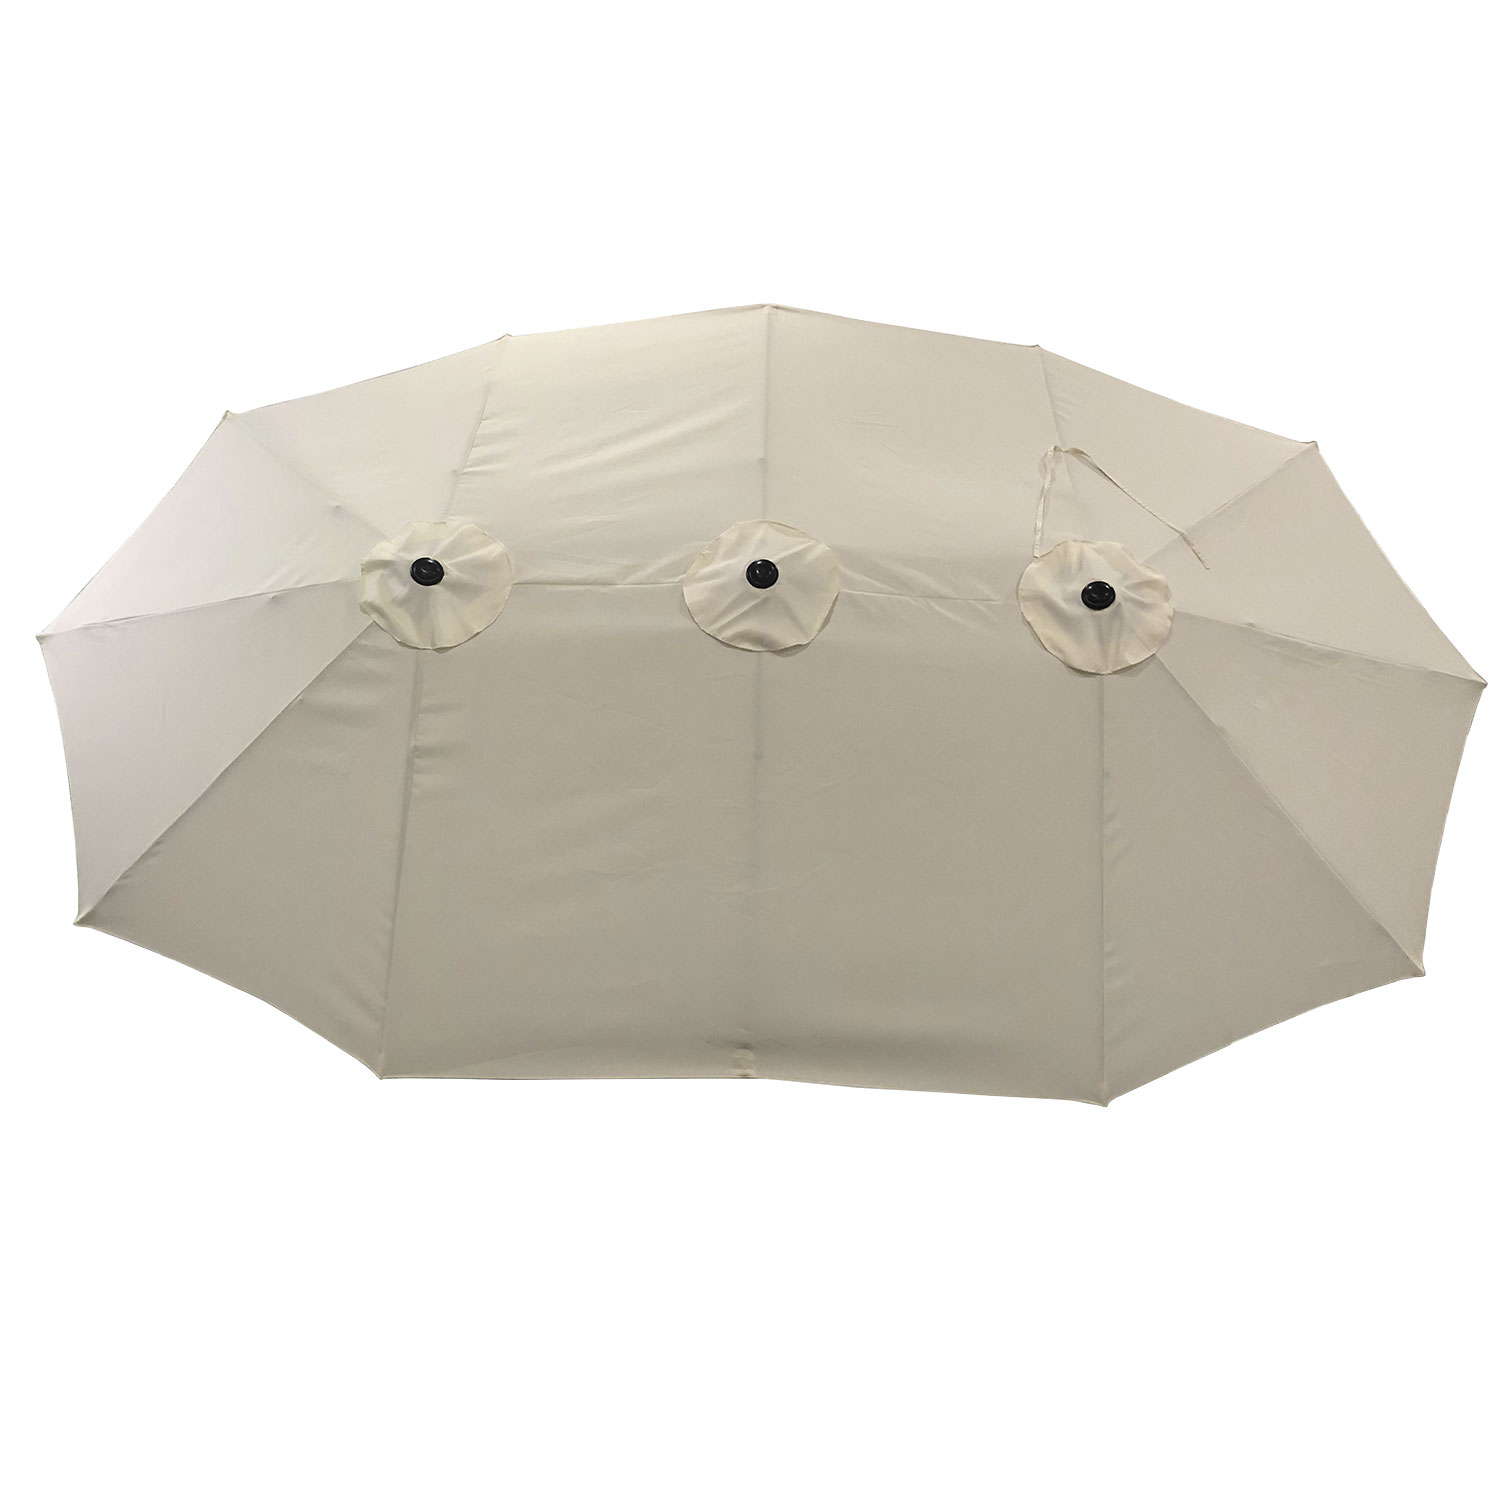 Dubbele paraplu 2,7x4,6m LINAI beige